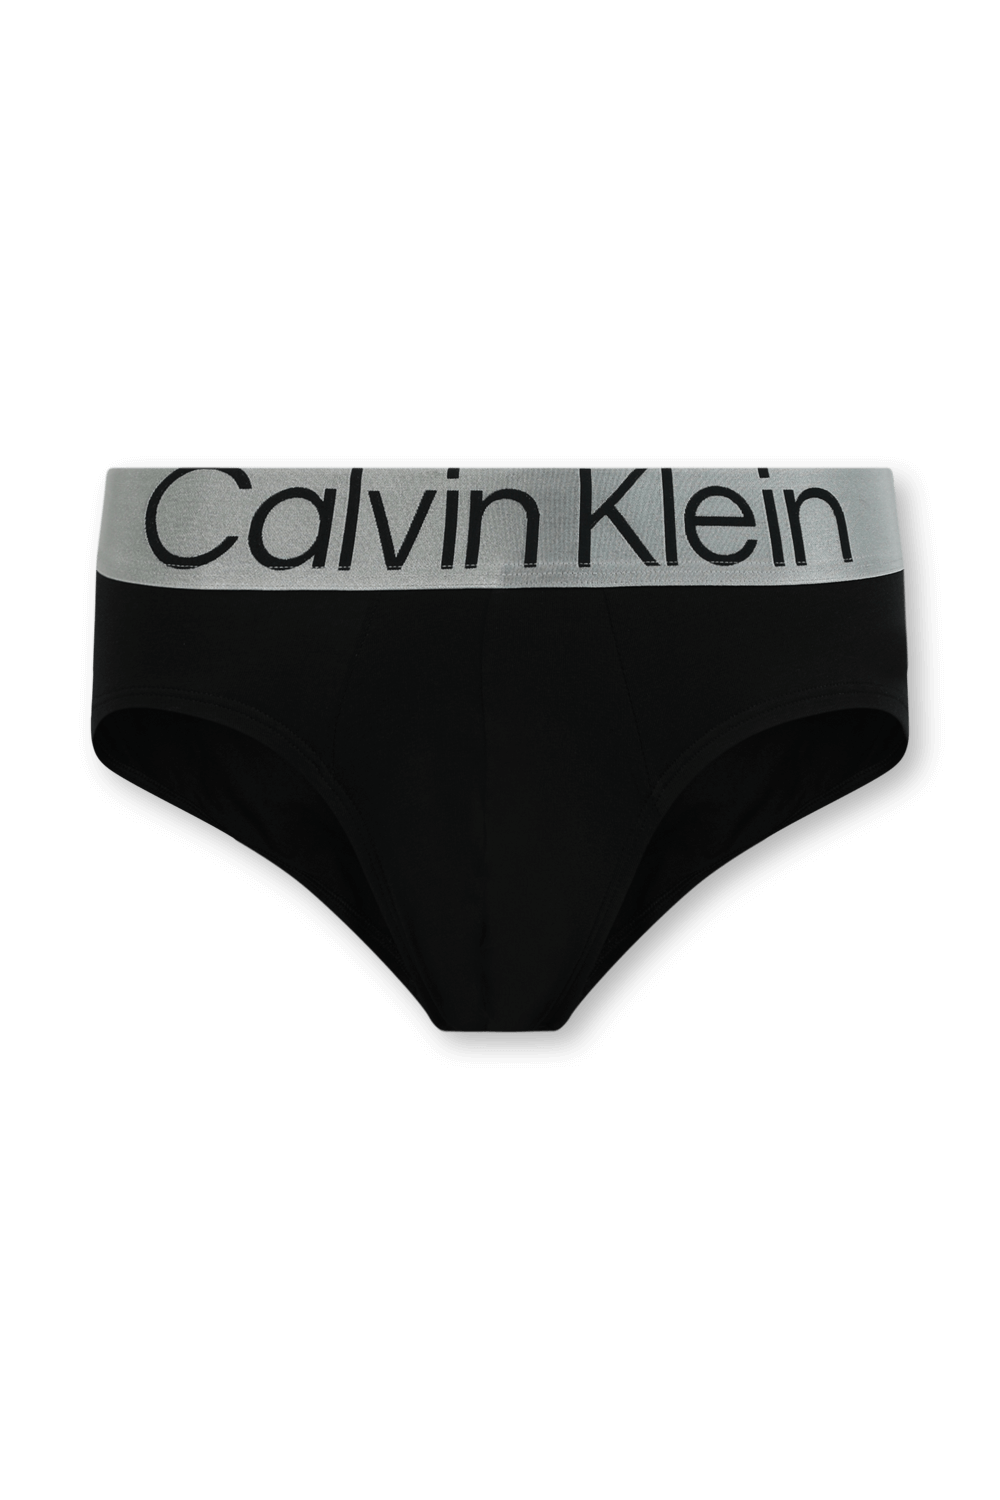 מארז שלישיית תחתונים שחורים CALVIN KLEIN